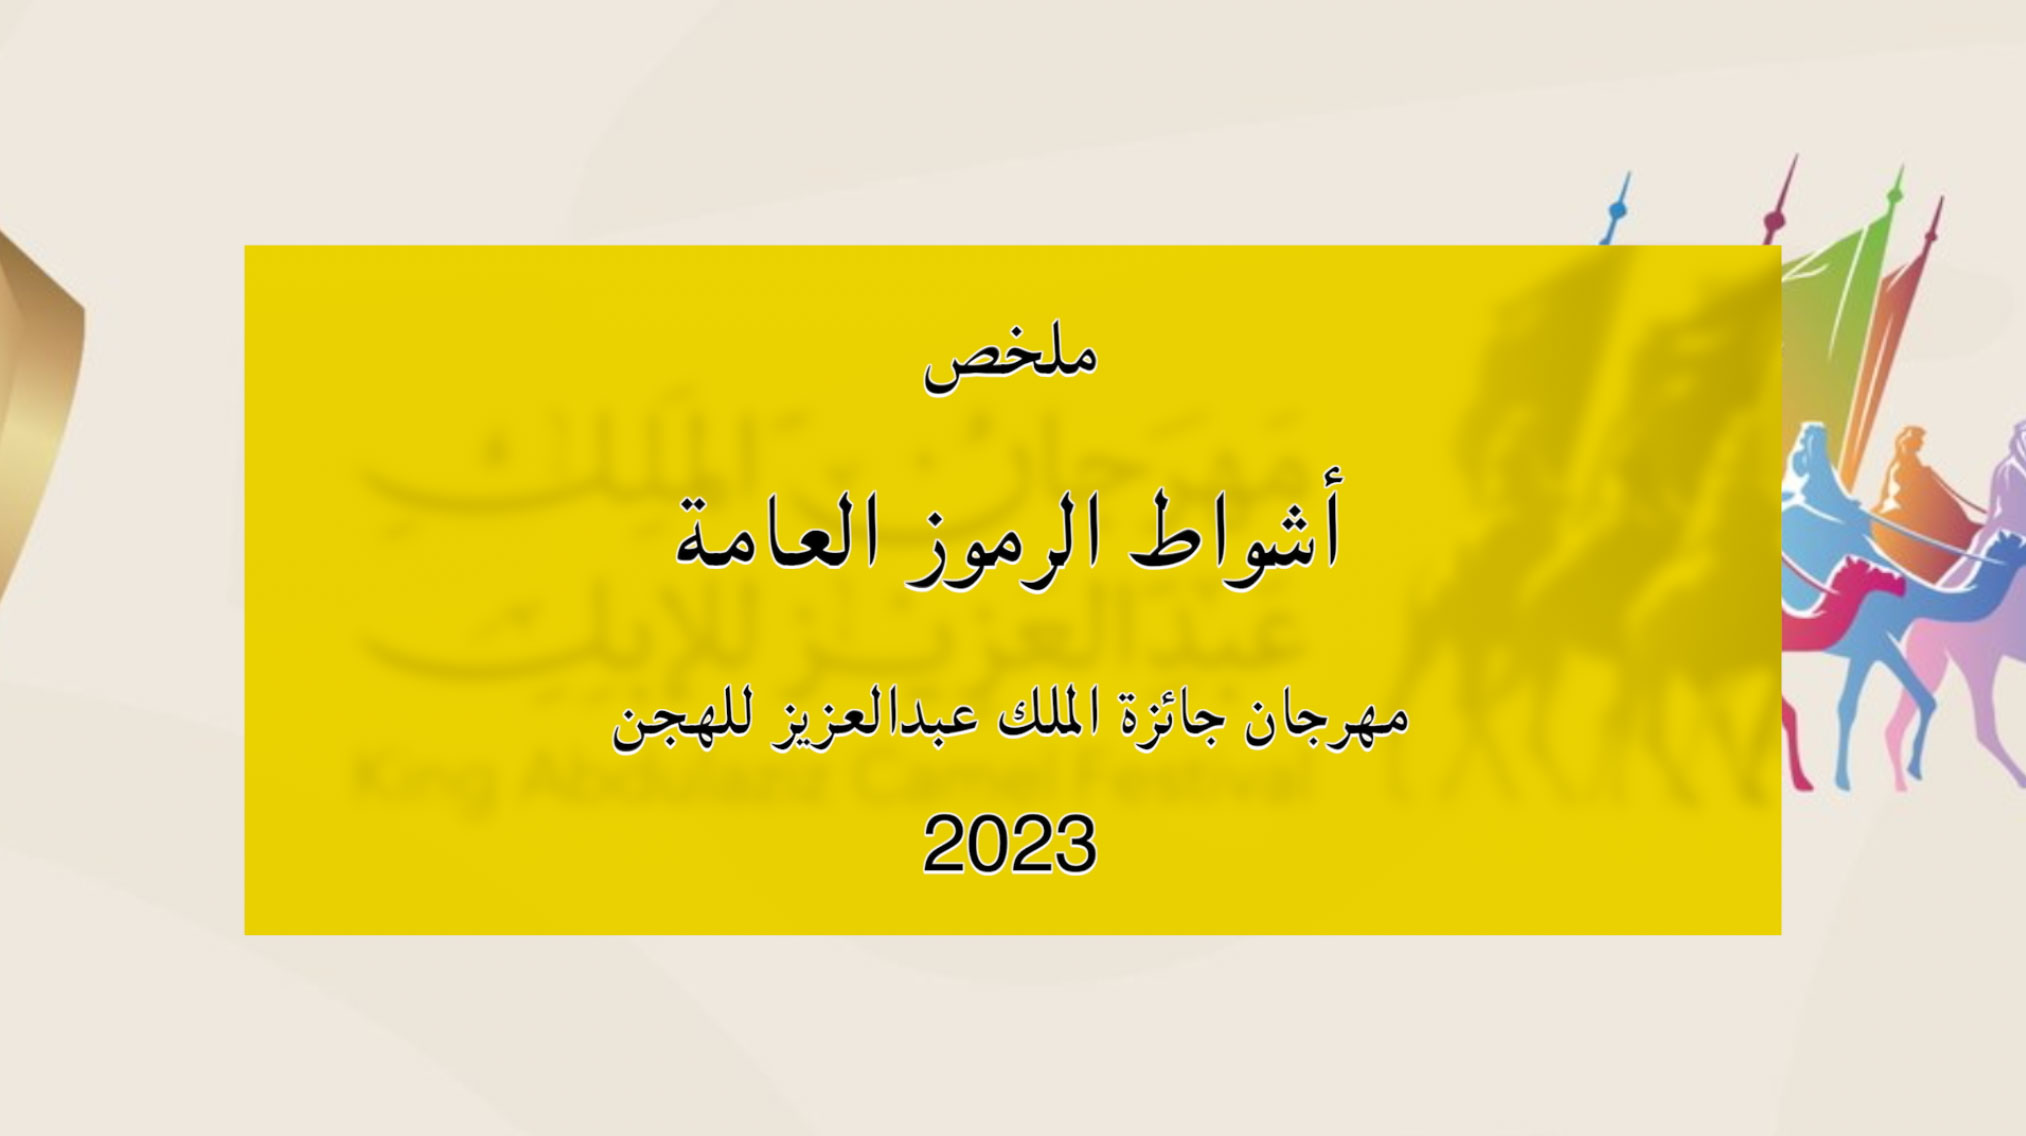 ملخص أشواط الرموز العامة بمهرجان جائزة الملك عبدالعزيز للهجن 2023